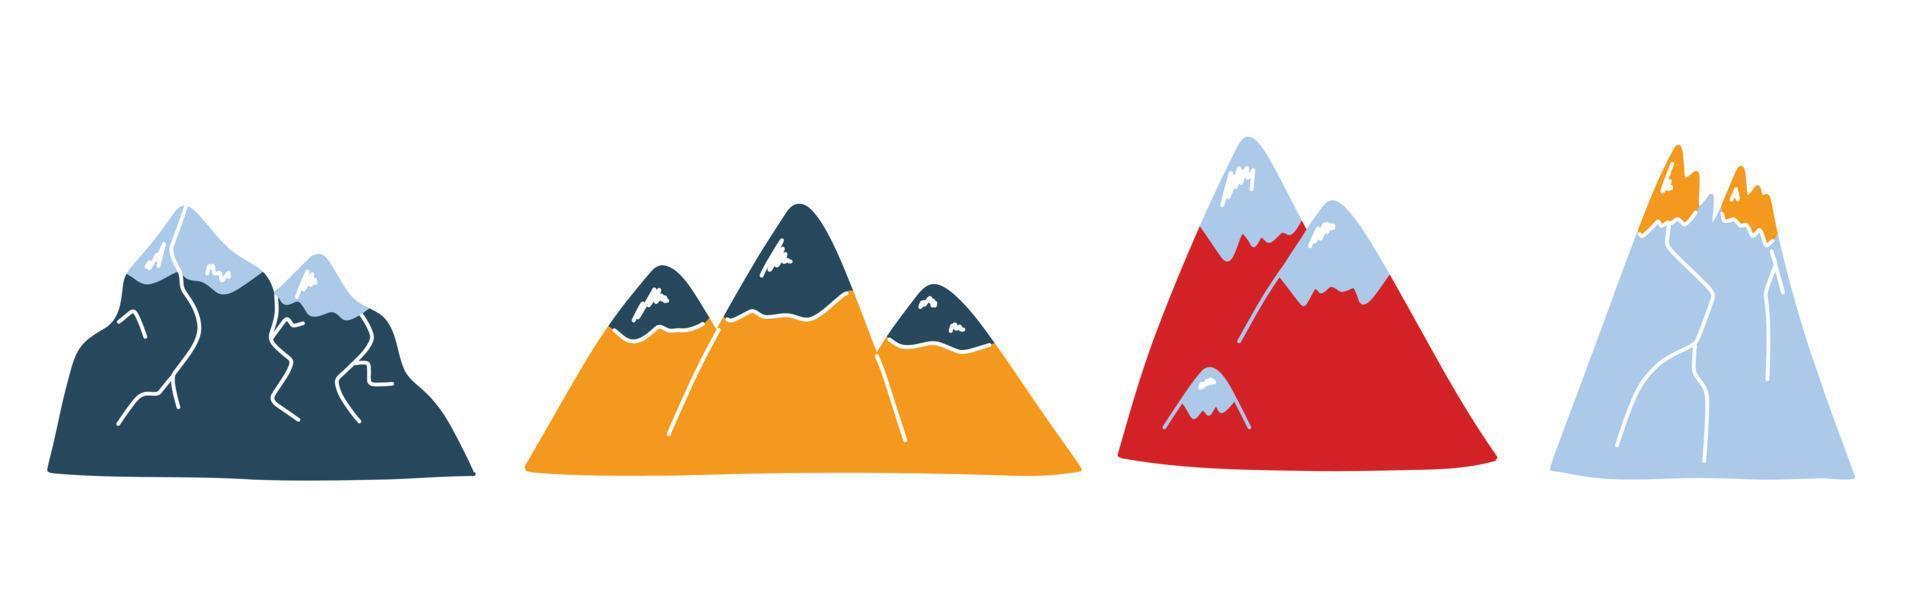 conjunto vectorial con lindas montañas de colores en estilo garabato, coloridas cimas de montañas de dibujos animados. lindas ilustraciones para postales, carteles, telas, diseño vector